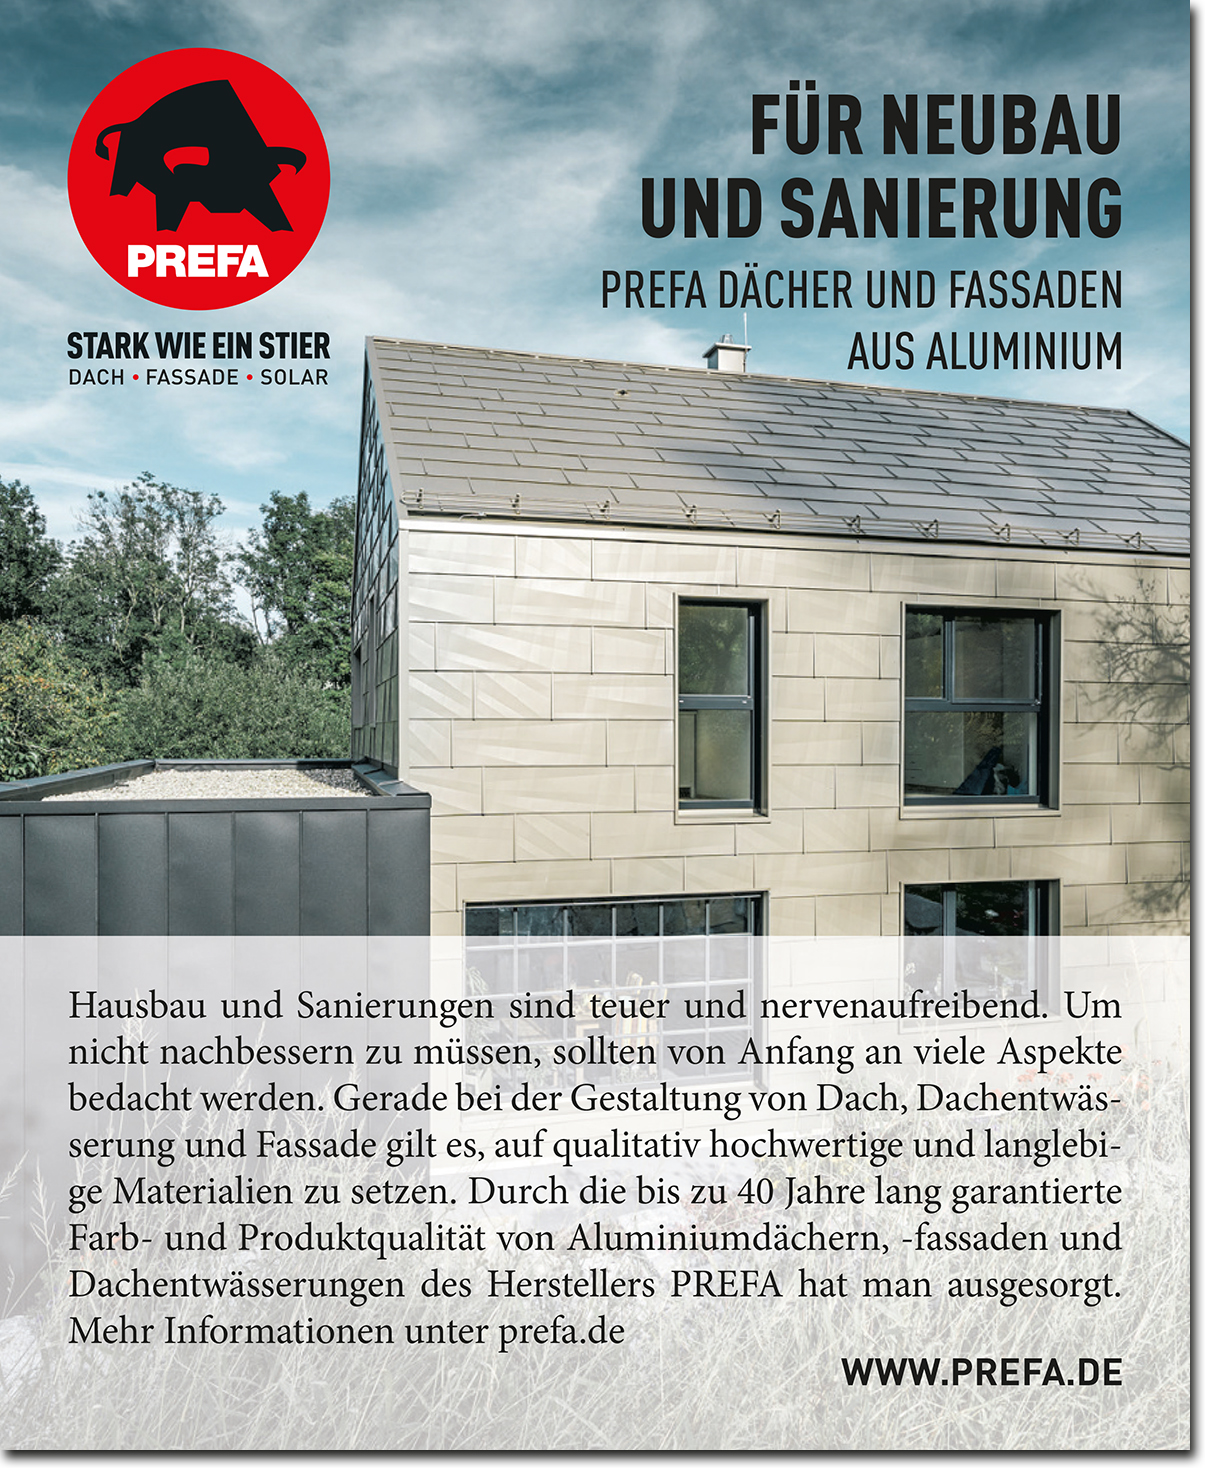 PREFA GmbH Alu- Dächer und Fassaden